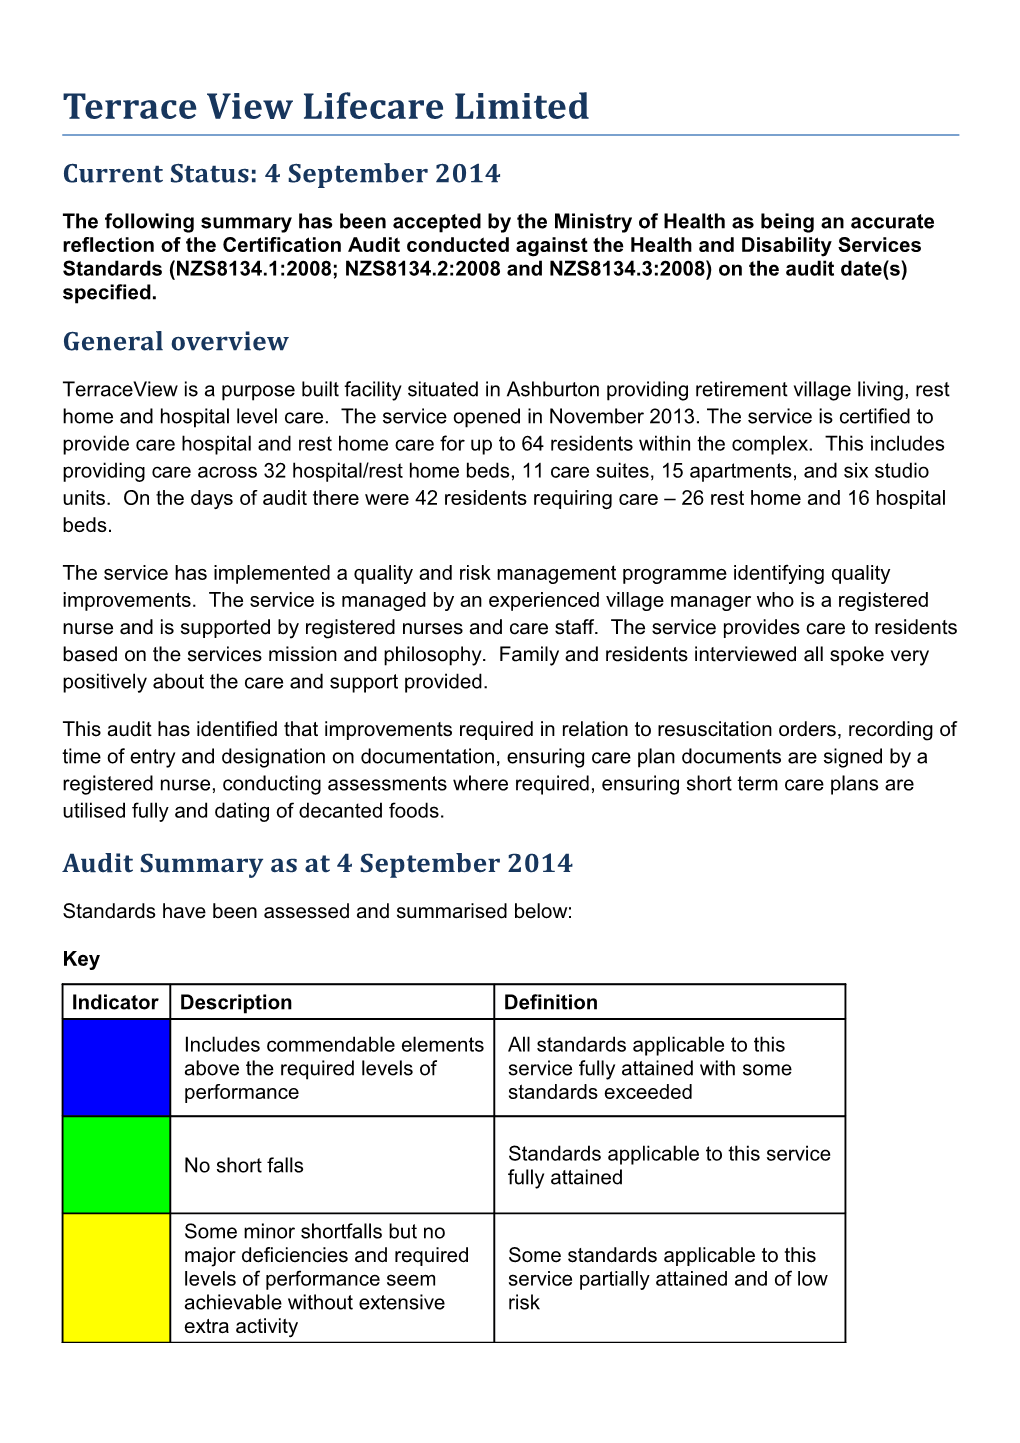 Certificaiton Audit Summary s17